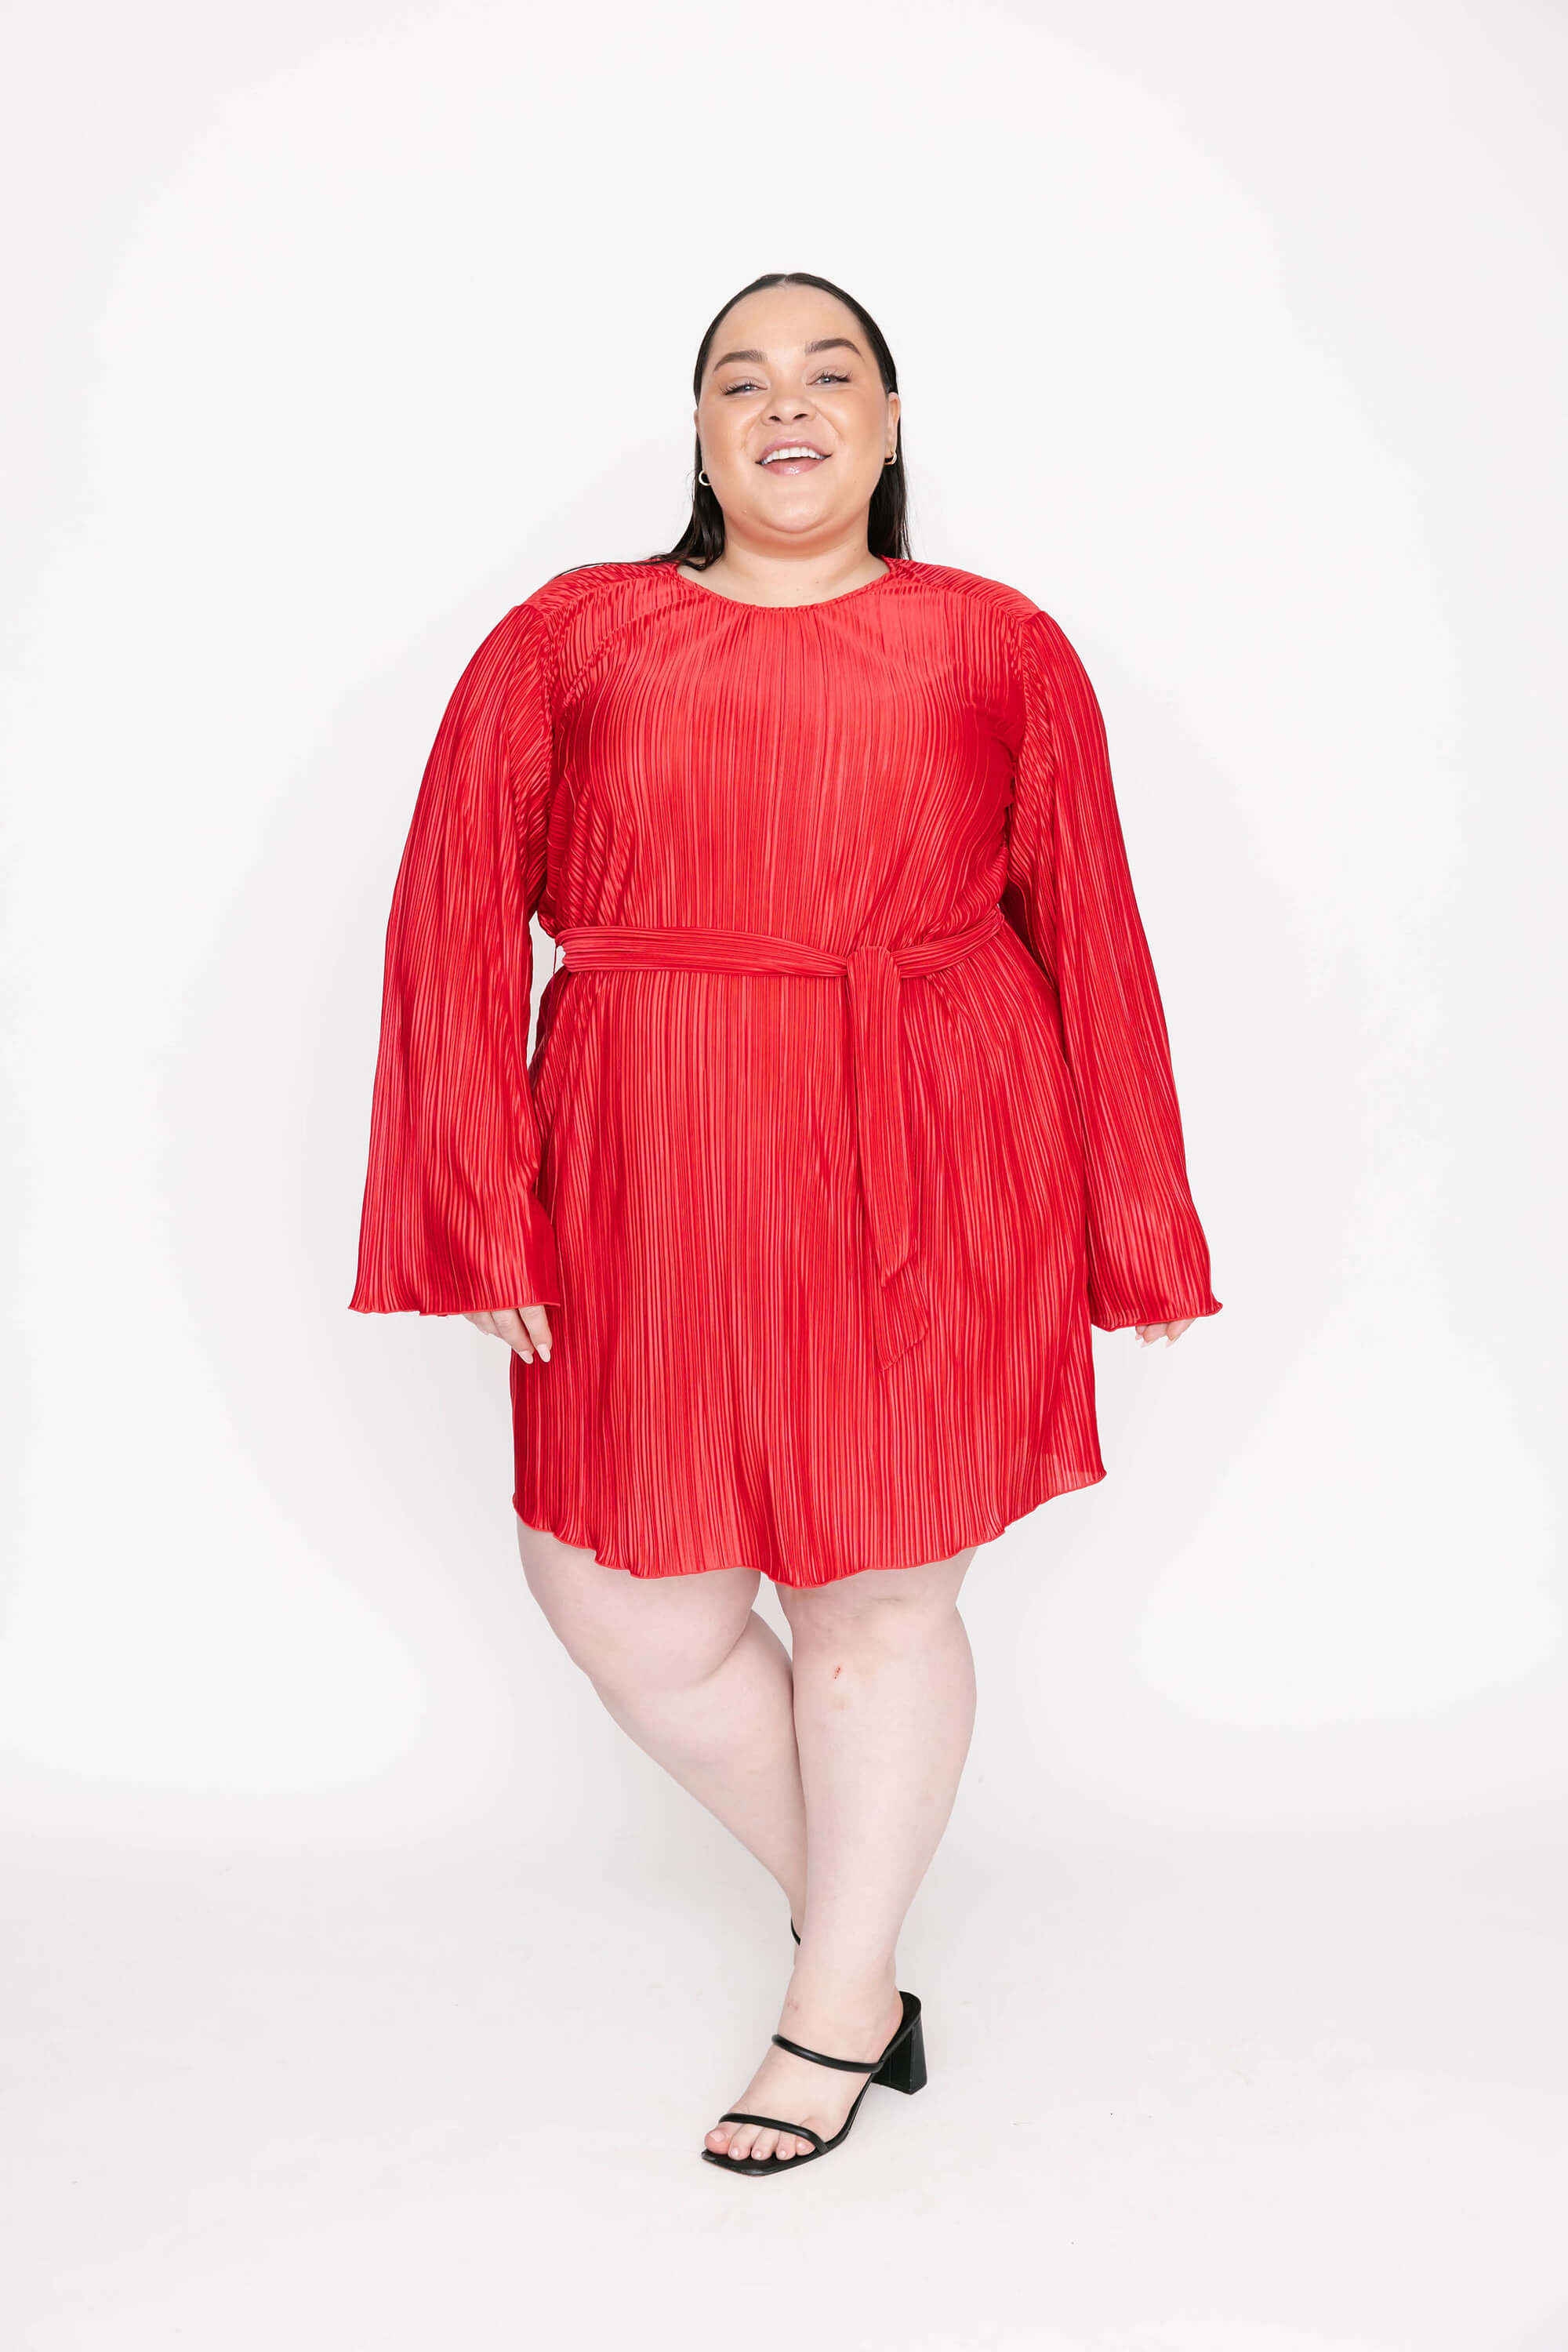 Smash + Tess Tasia Mini Dress in Festive Red